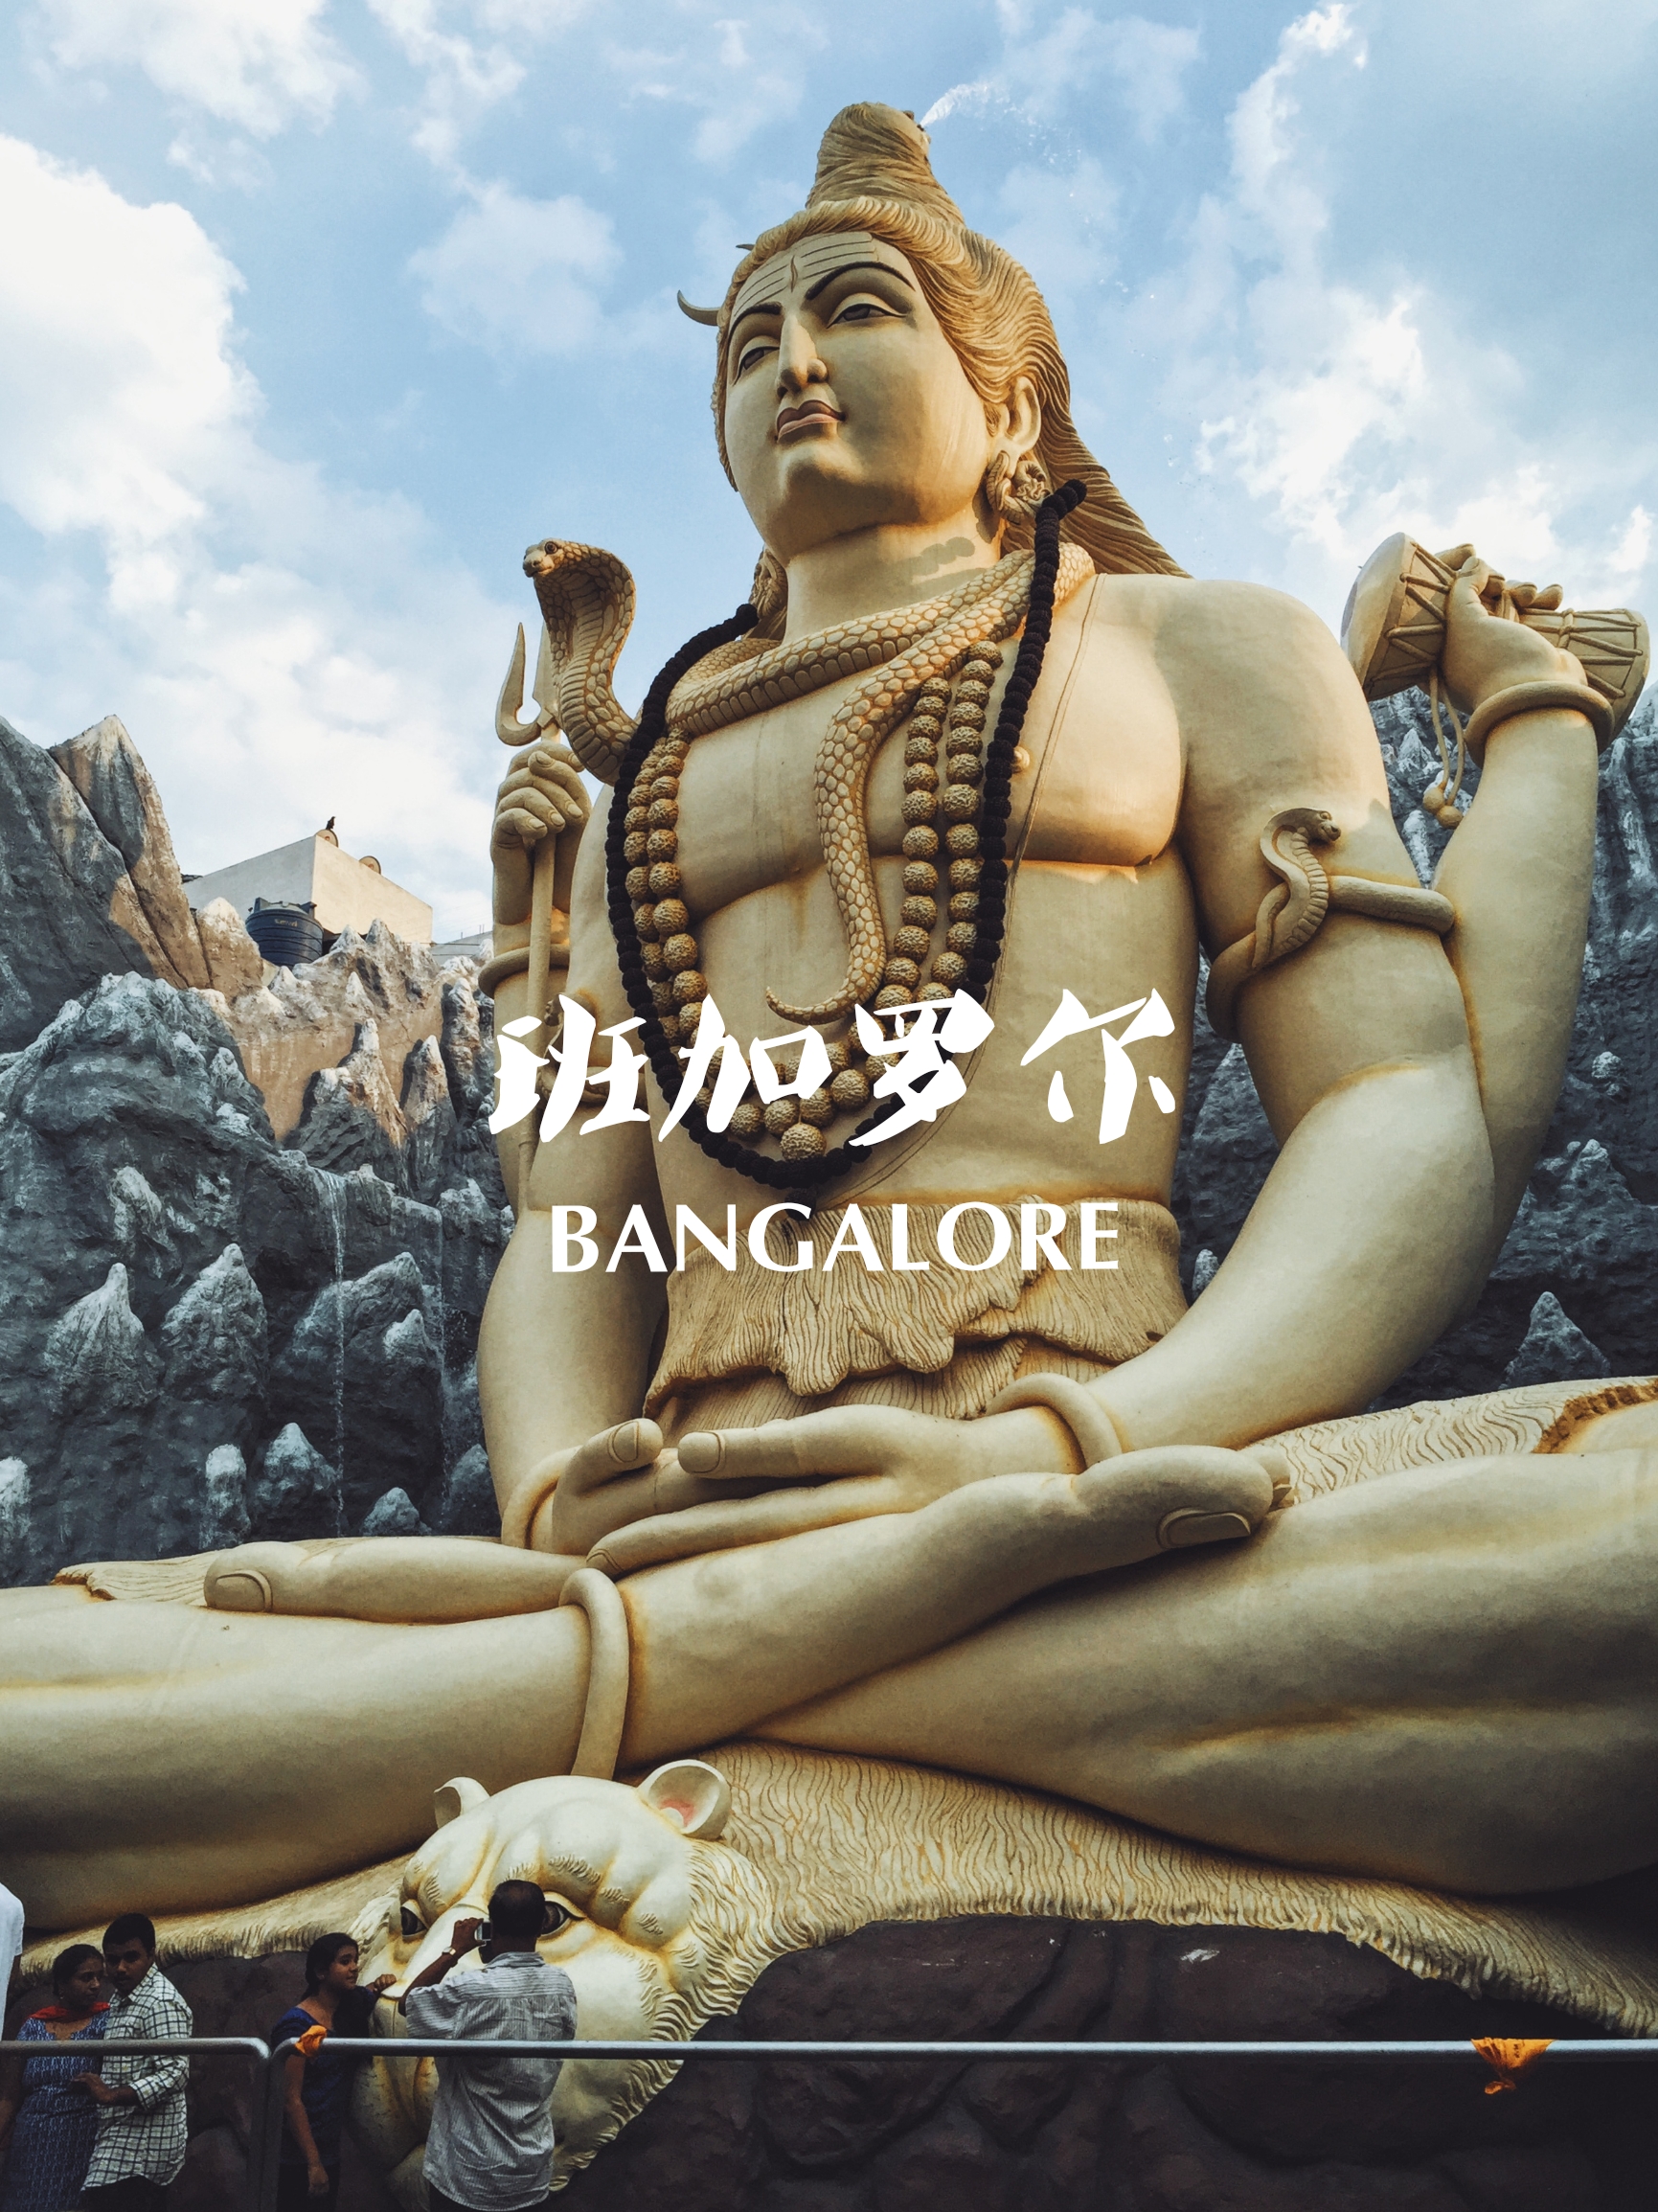 我终于来了任意门另一边班加罗尔丨本地人的巨物湿婆崇拜